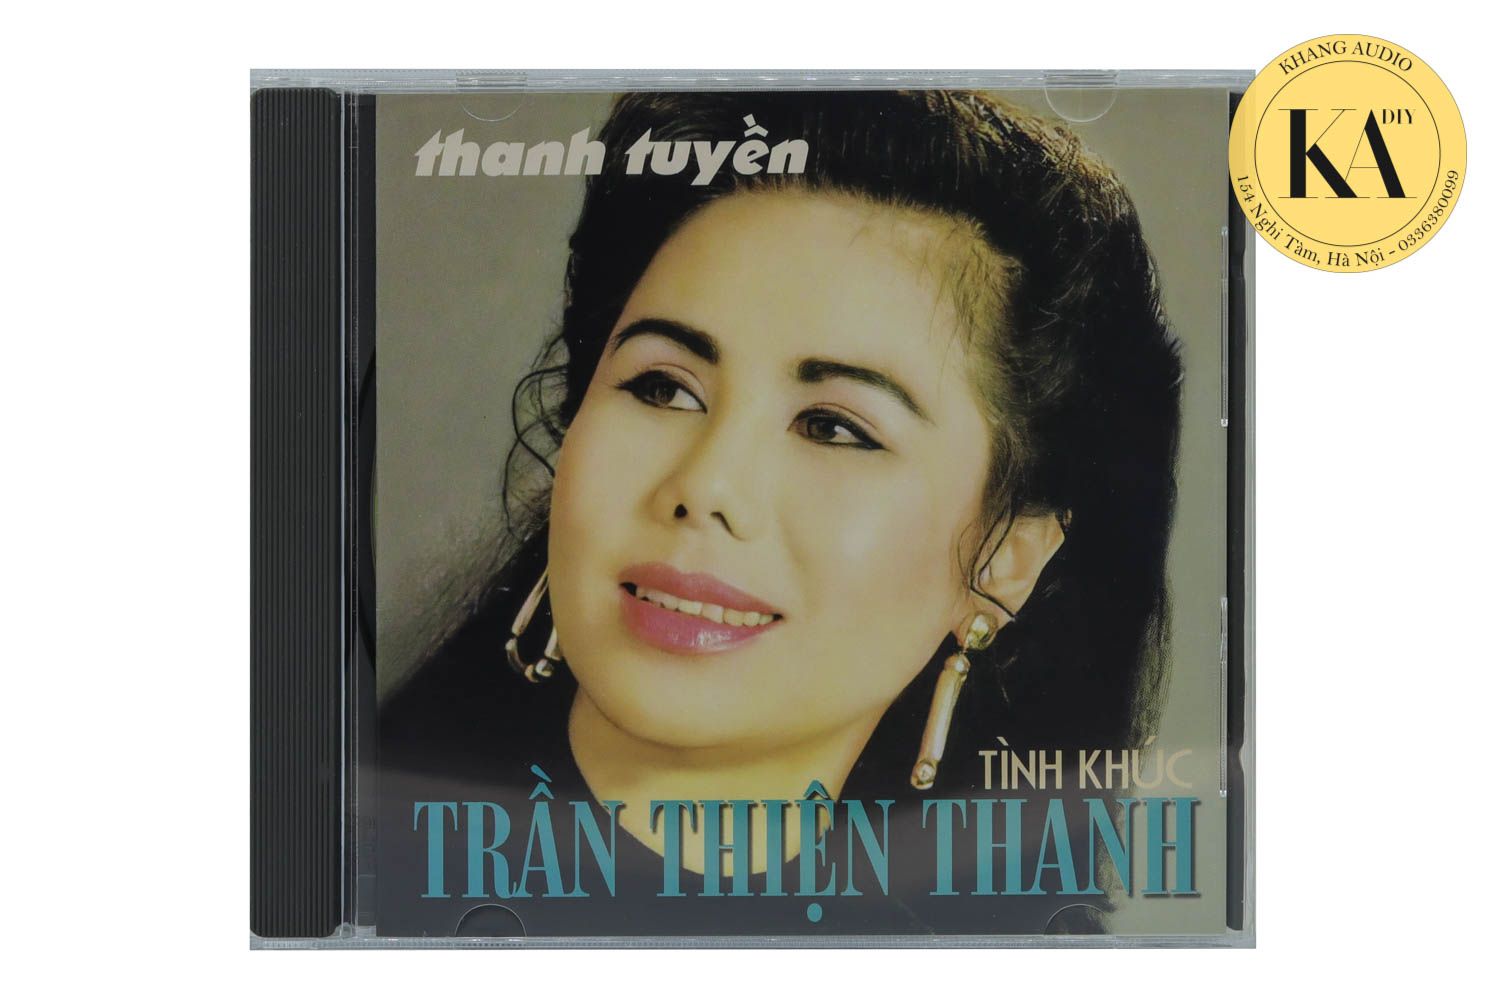 Tình Khúc Trần Thiện Thanh - Thanh Tuyền Khang Audio 0336380099